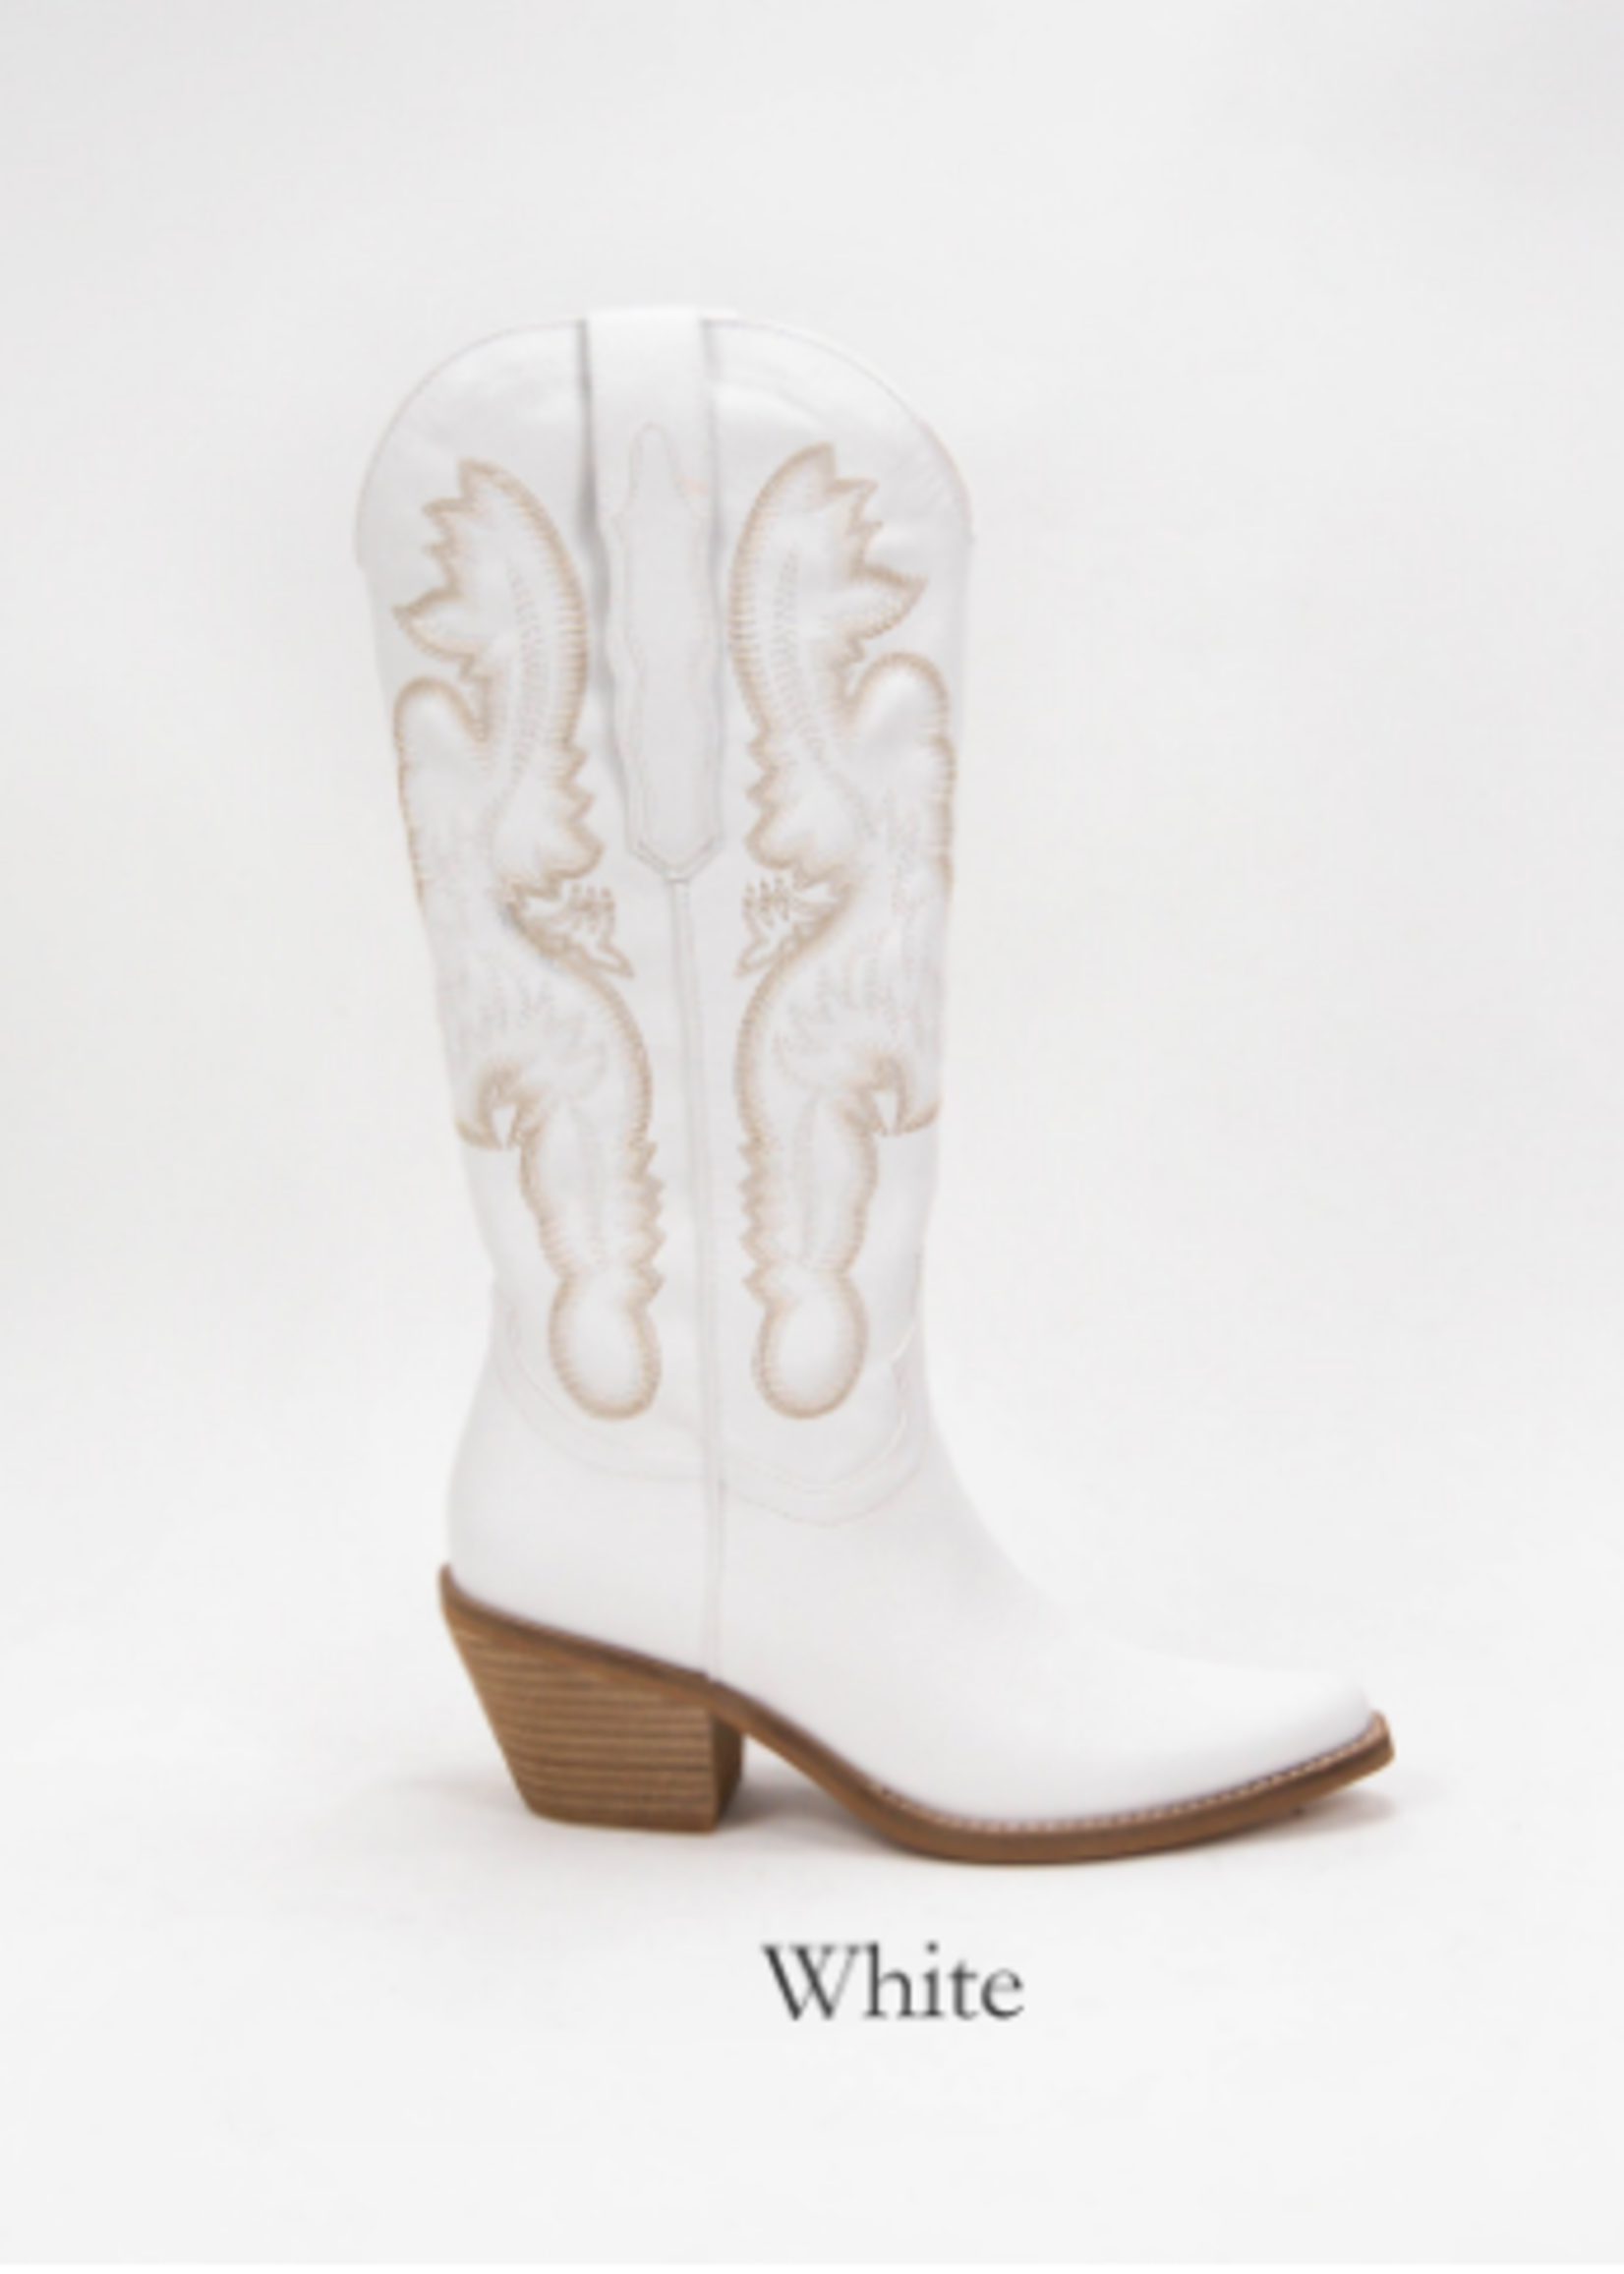 White Cowboy Boots w/Stitching